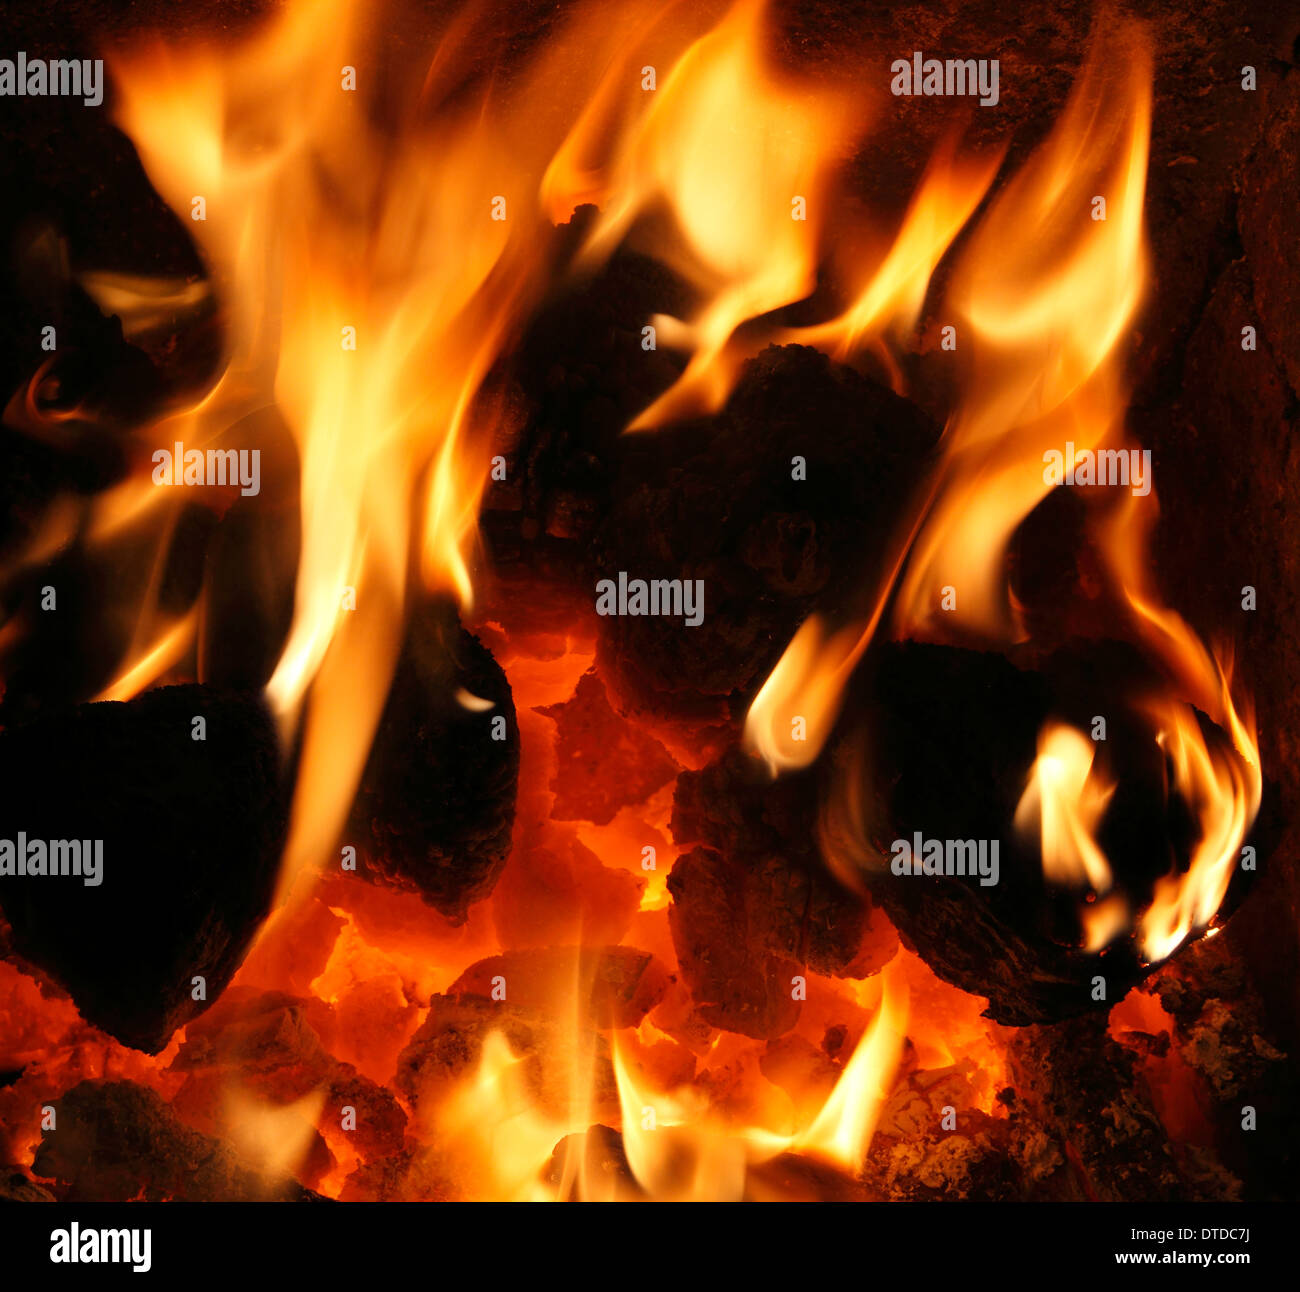 Combustibles sólidos, carbón nacional fuego, ardor, llamas, llamas corazón fireside incendios energía de calor calor cálido hogar incendios Foto de stock